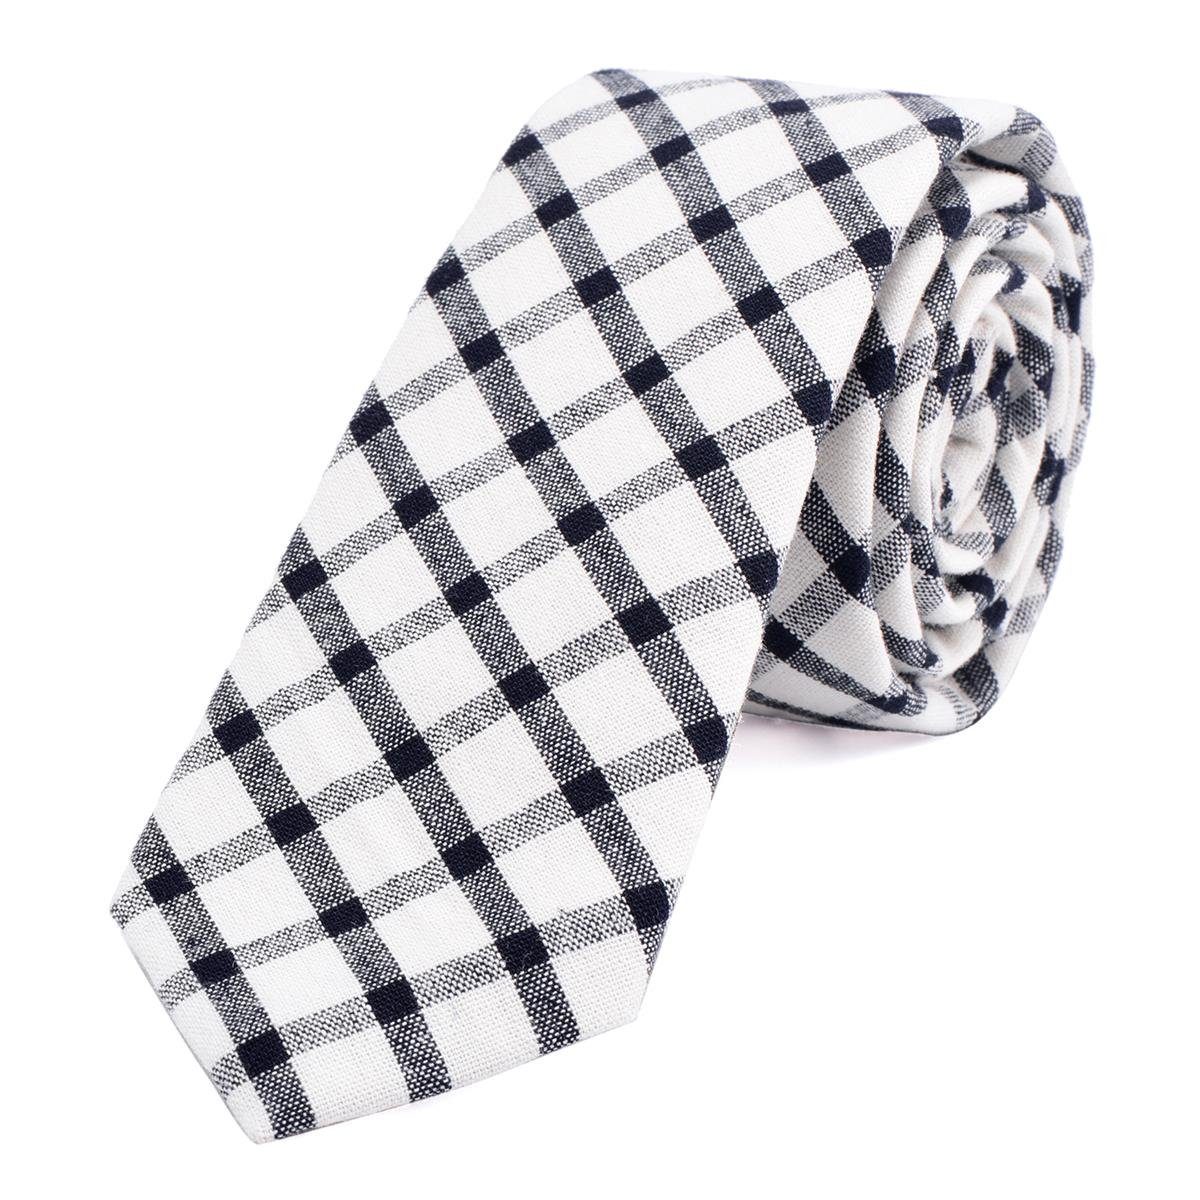 DonDon Krawatte Herren Krawatte 6 cm mit Karos oder Streifen (Packung, 1-St., 1x Krawatte) Baumwolle, kariert oder gestreift, für Büro oder festliche Veranstaltungen elfenbein-weiß-schwarz kariert 1